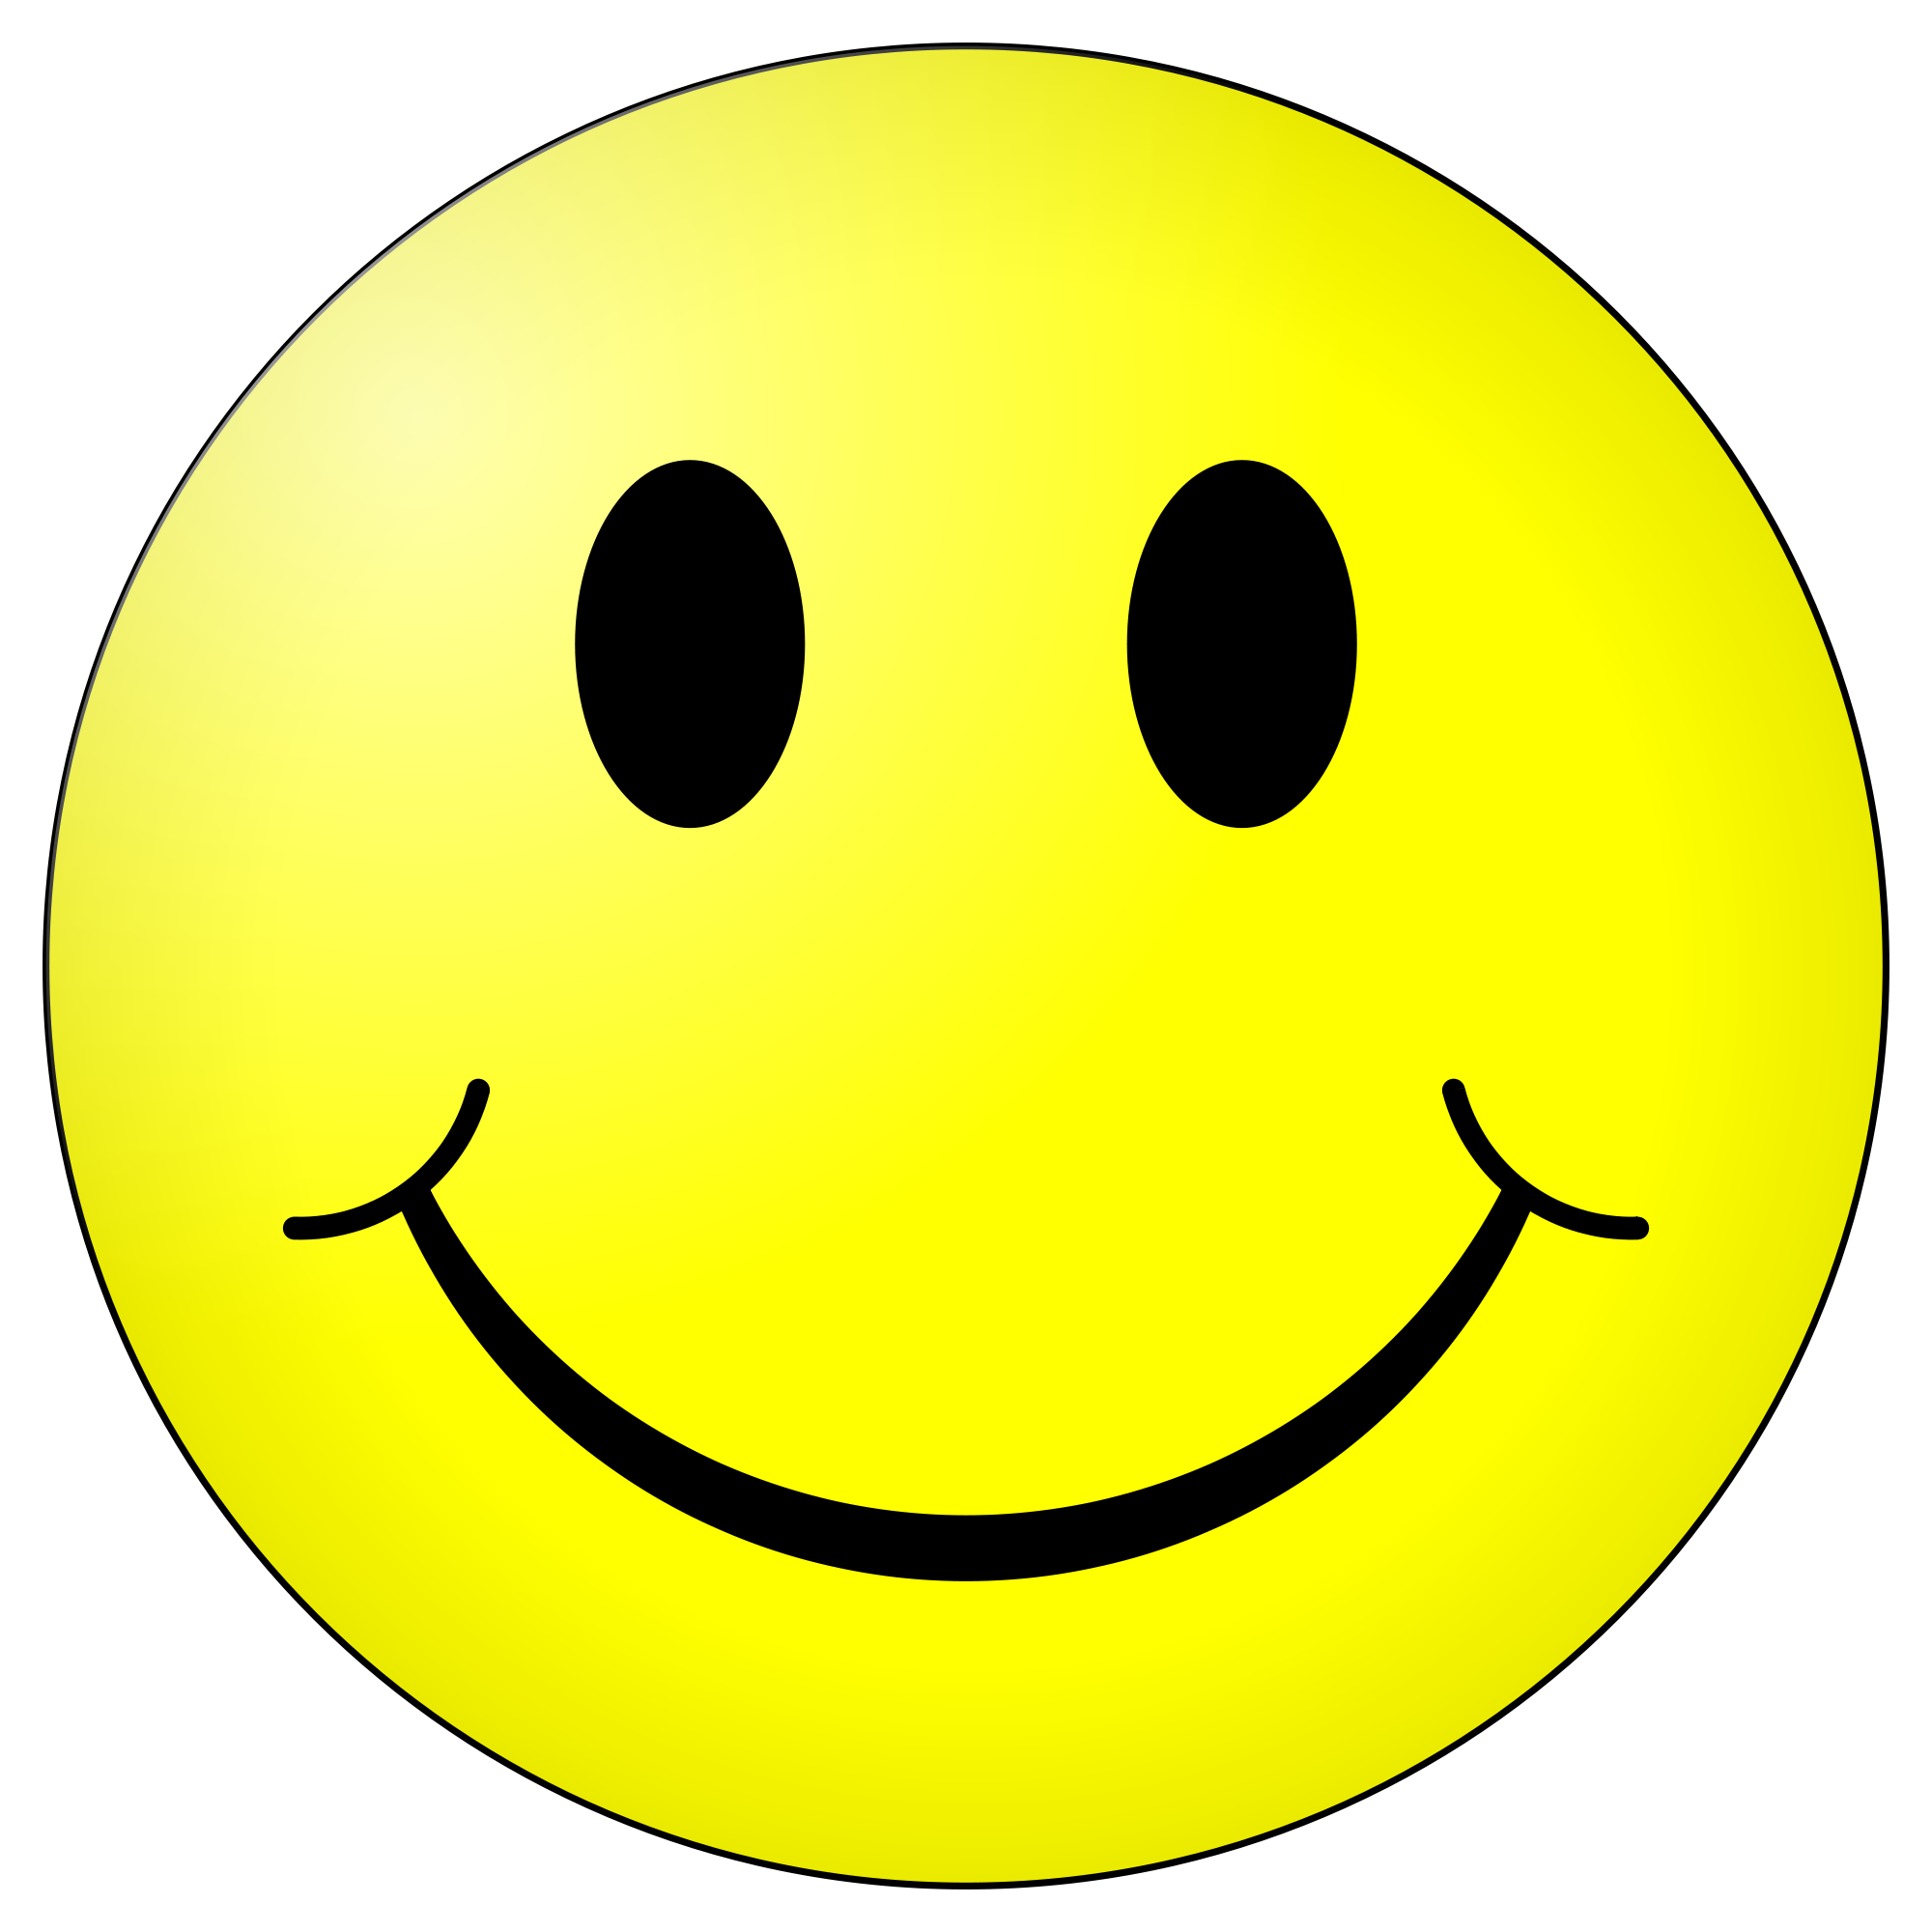 Smiley - Wikipedia, the free encyclopedia